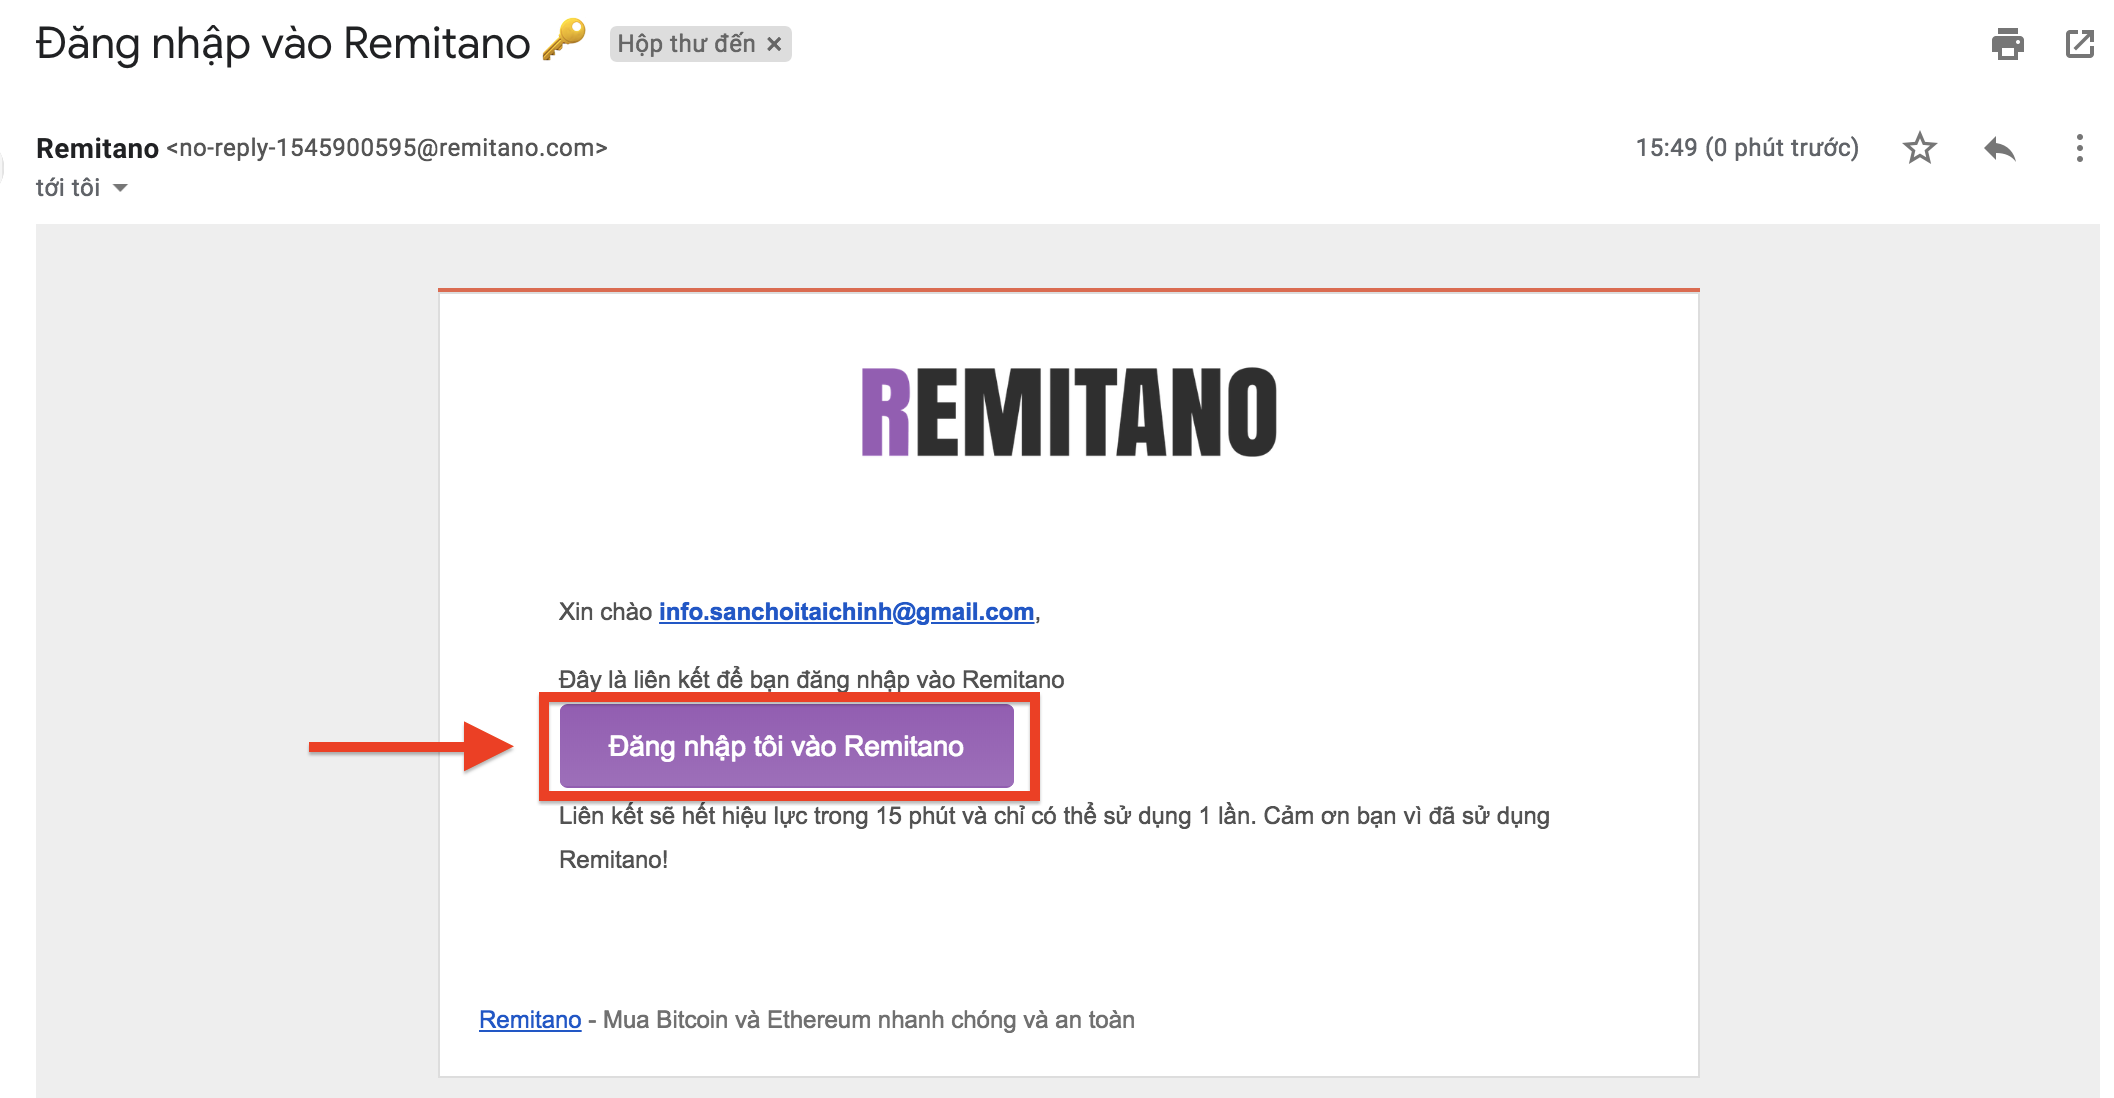 Click vào ô Remitano để đăng nhập vào tài khoản